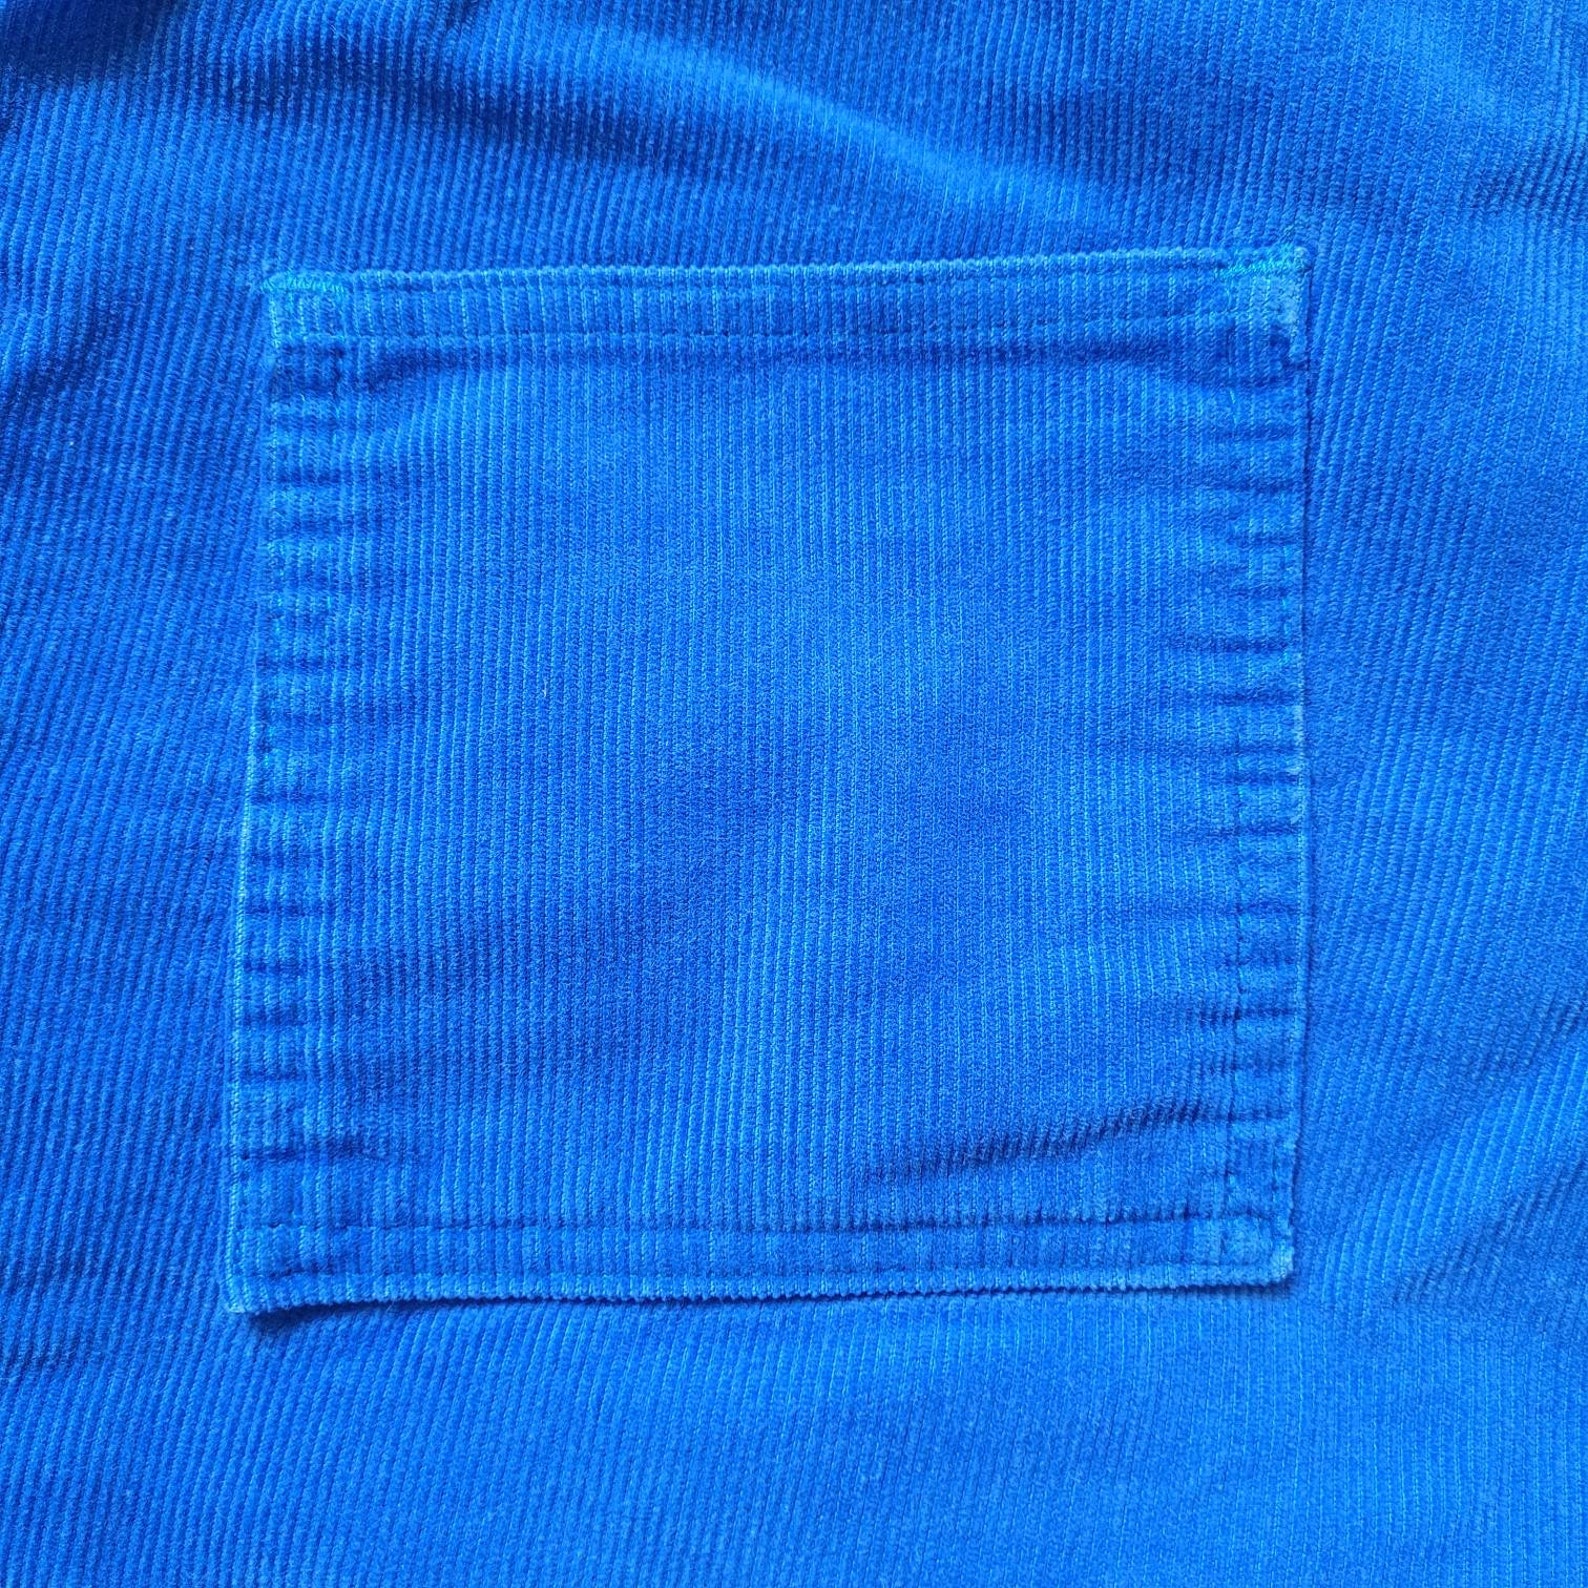 Vintage 70s/80s Blue Corduroy Longrider Cotton Shorts Size - Etsy